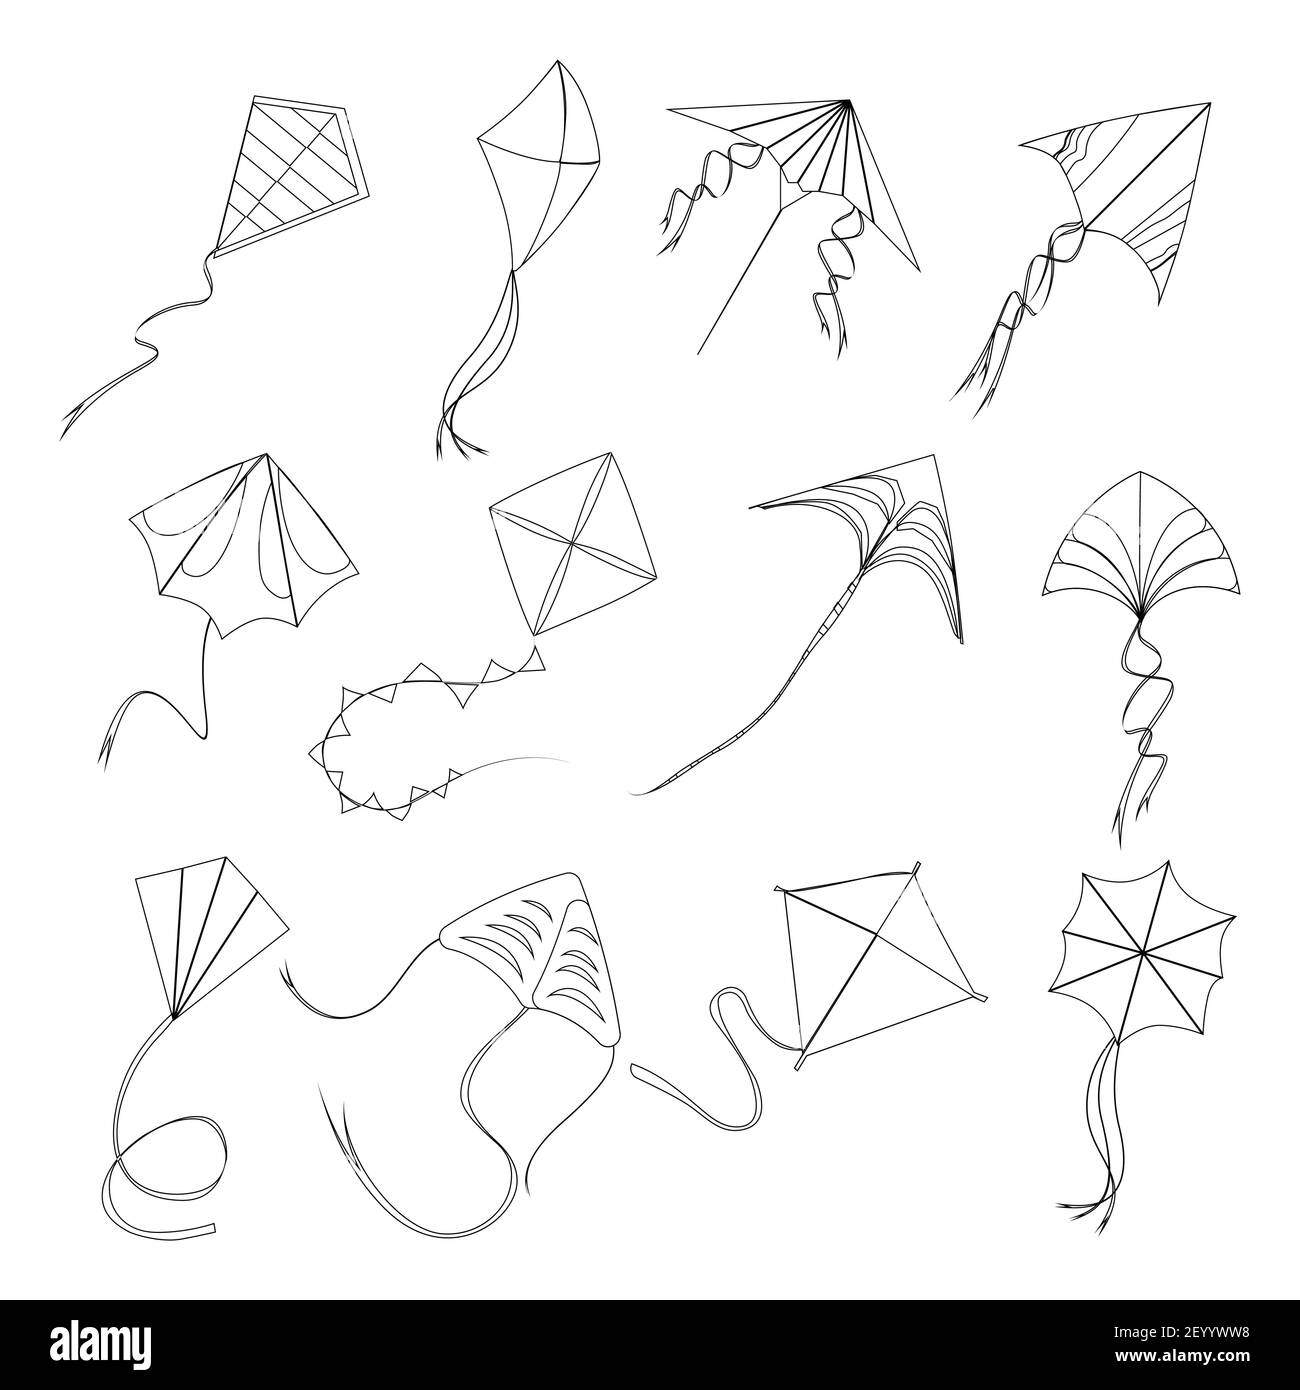 Kite Fly style linéaire à sankranti makar, linestyle course enfants jouets divers forme et forme, haut vol extérieur, actif hobby jouet divertissement. Vect Illustration de Vecteur